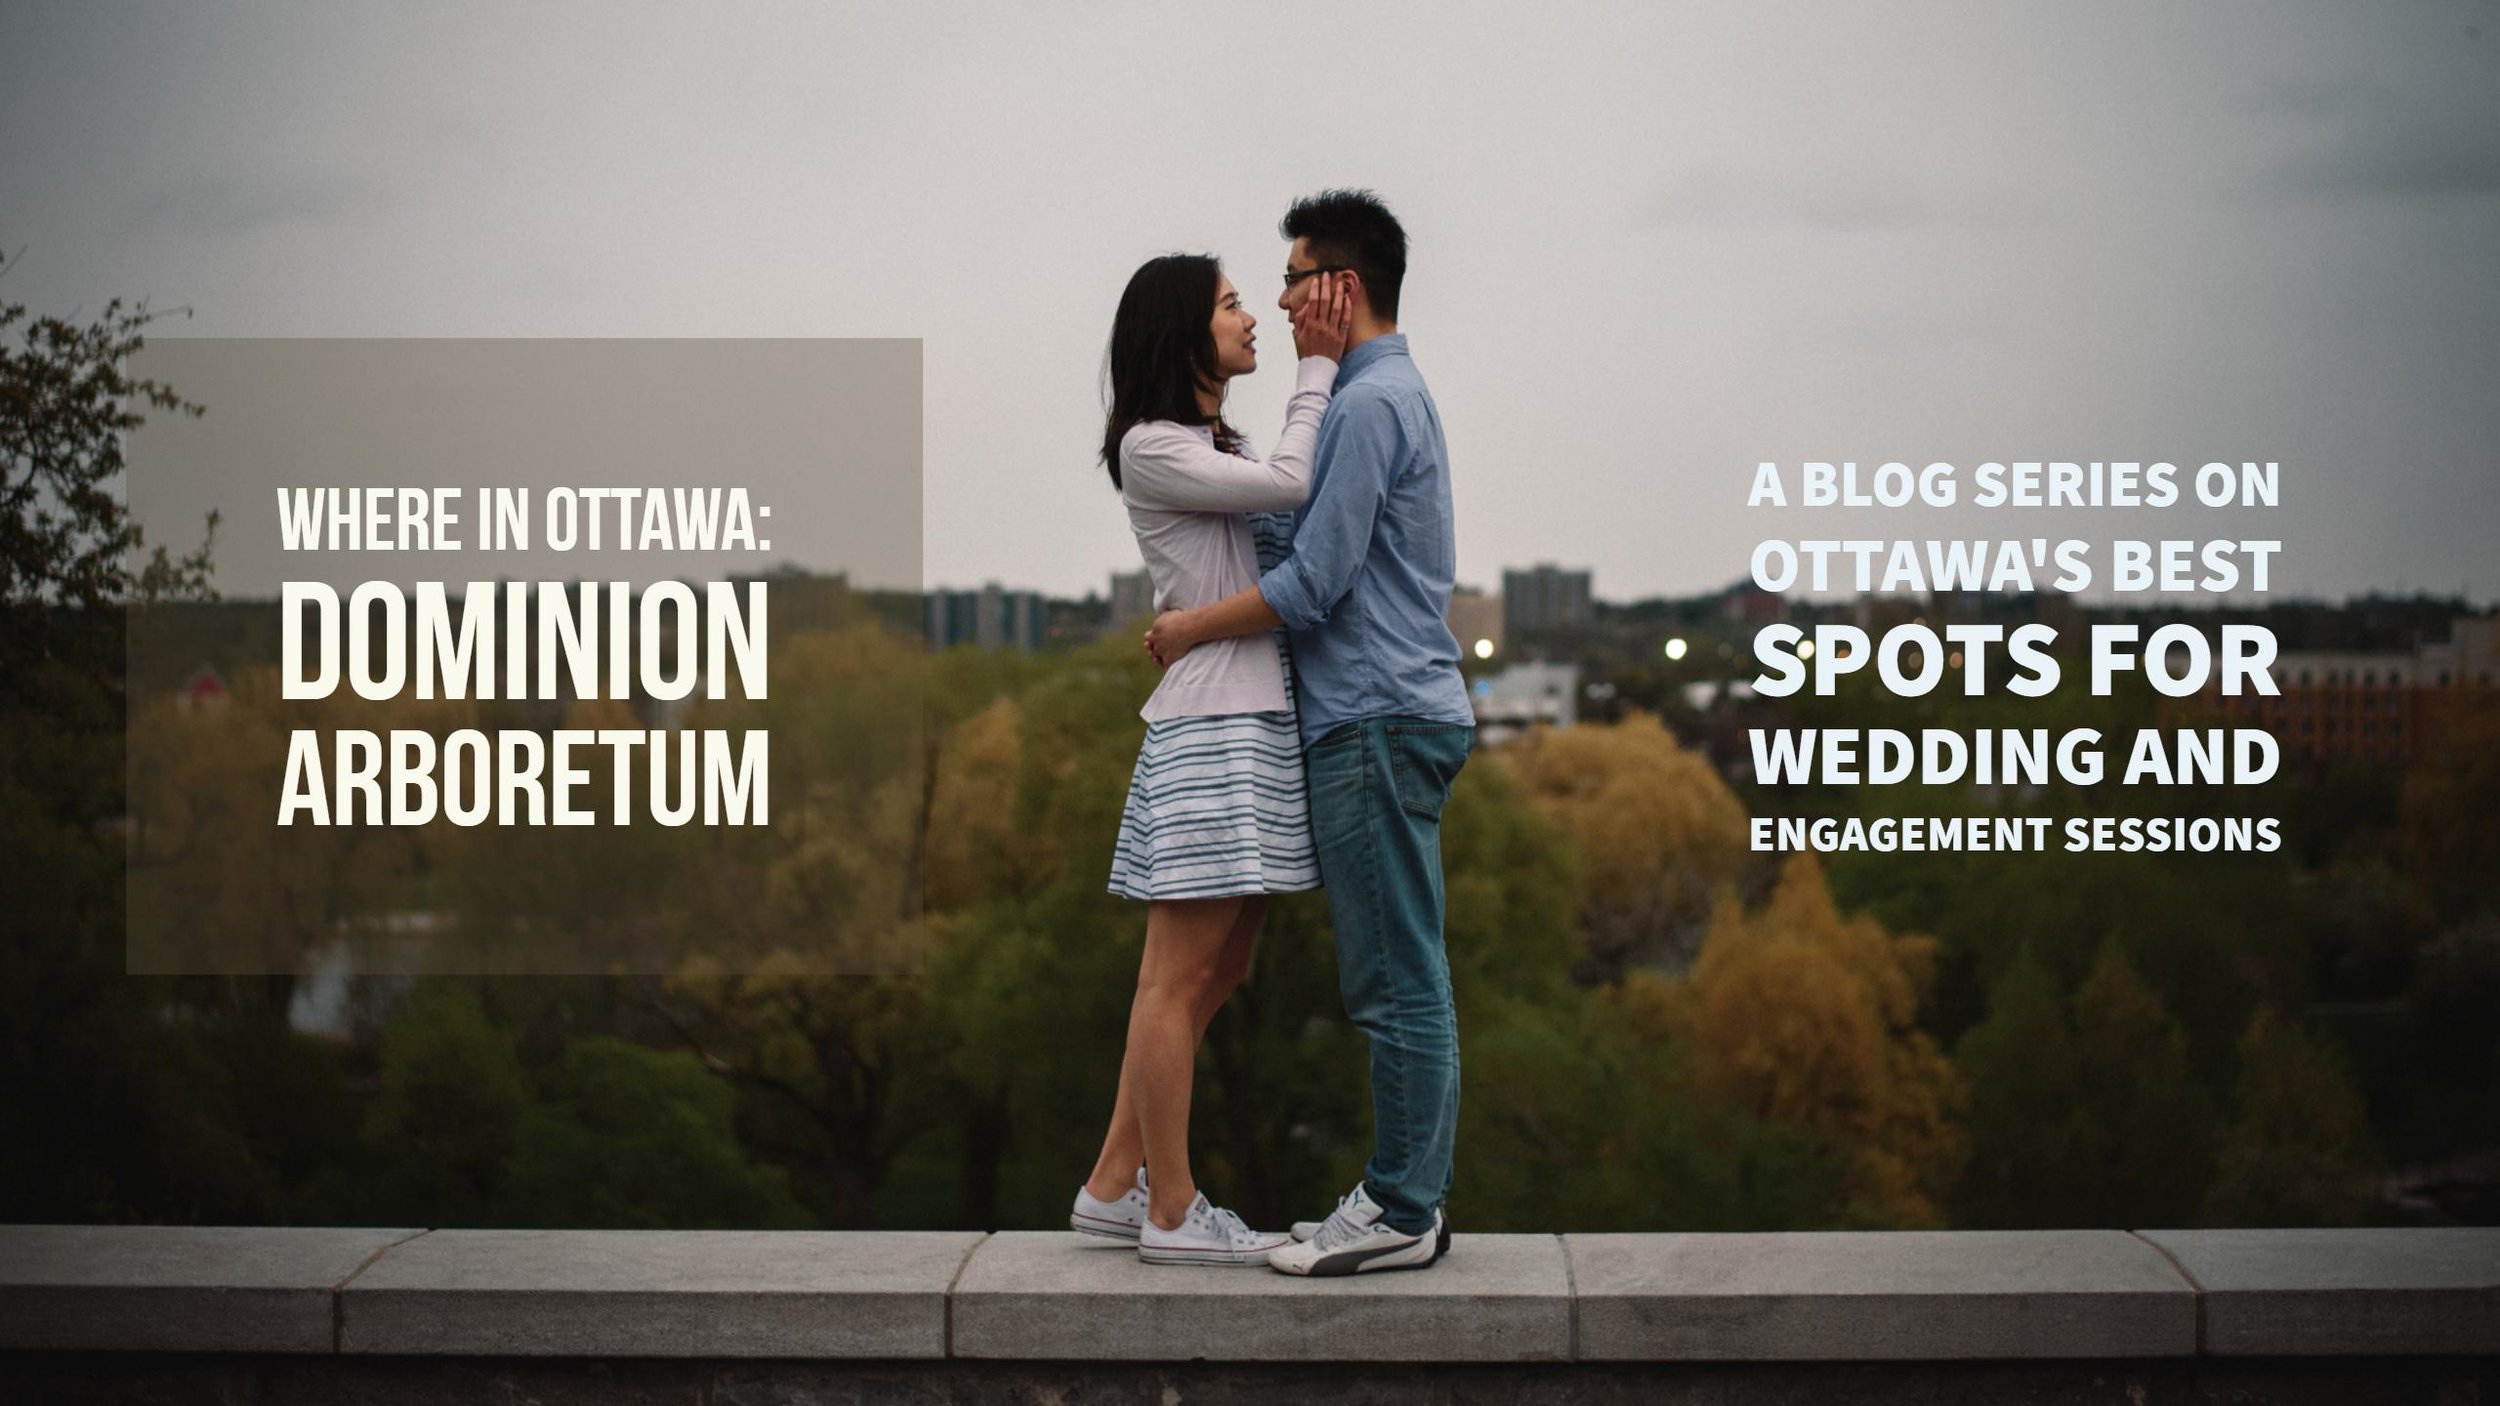 Ottawa dating blog